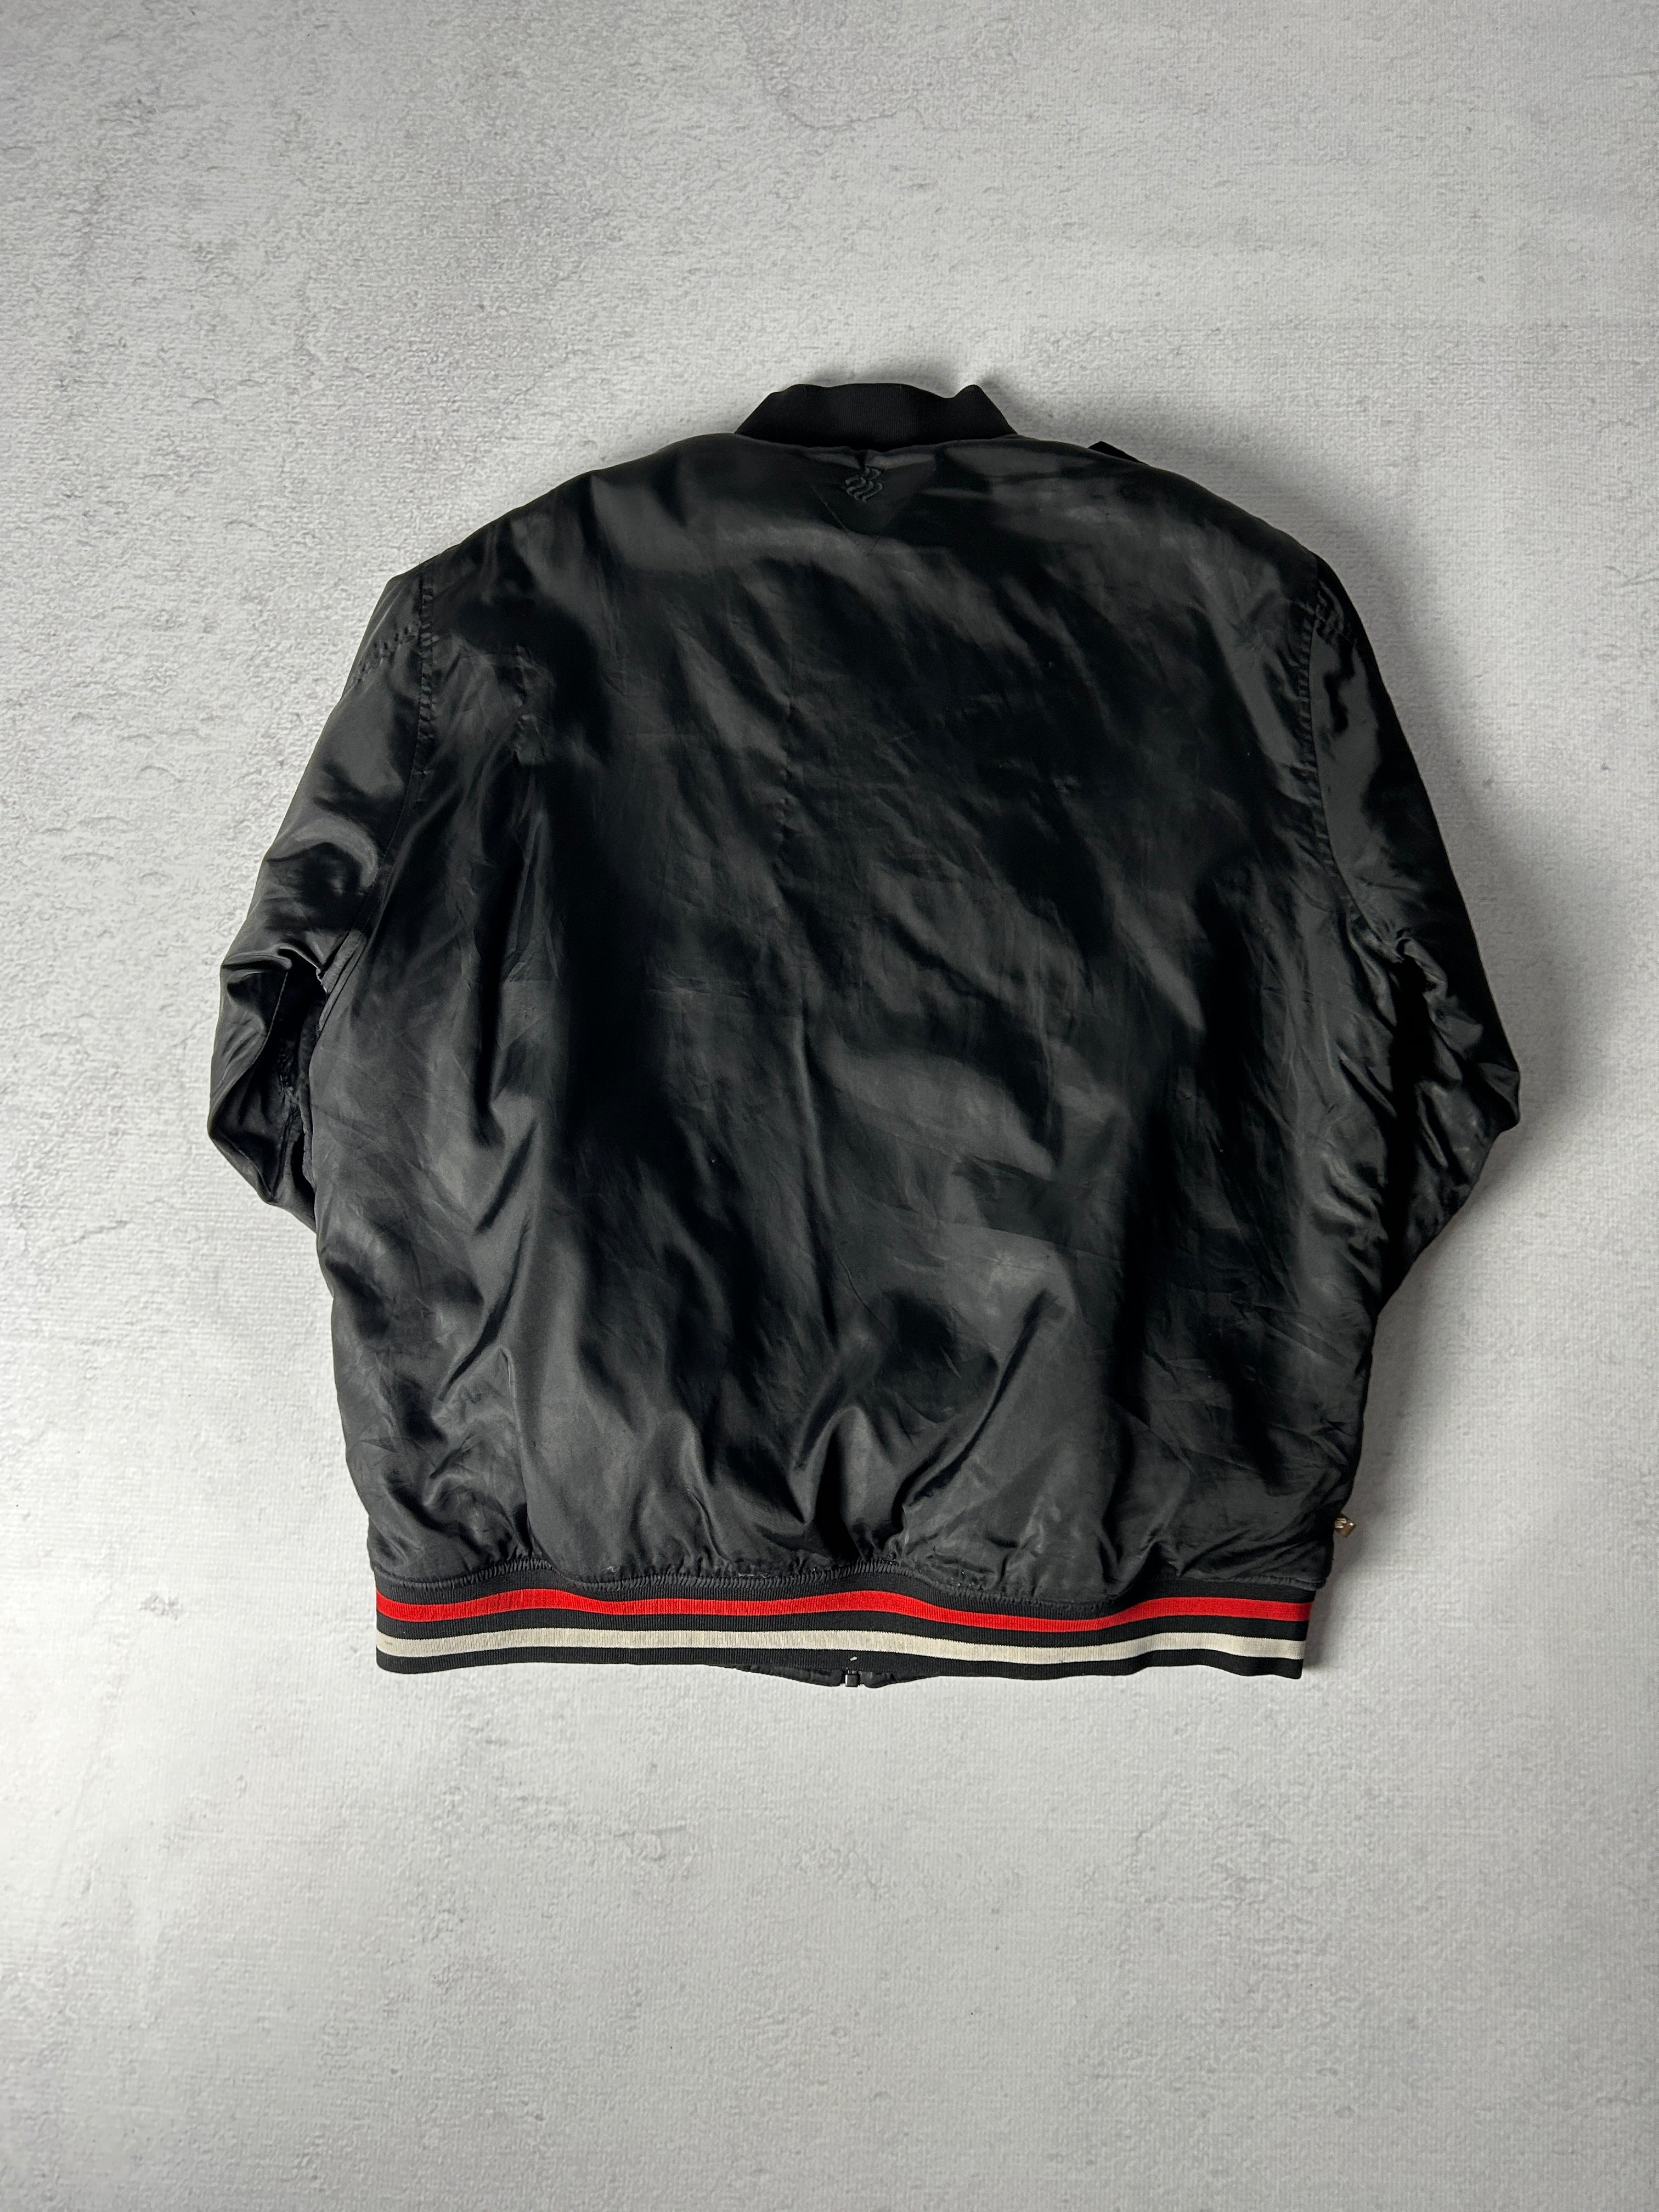 Vintage Rocca Wear Insulated Jacket - Men's 2XL